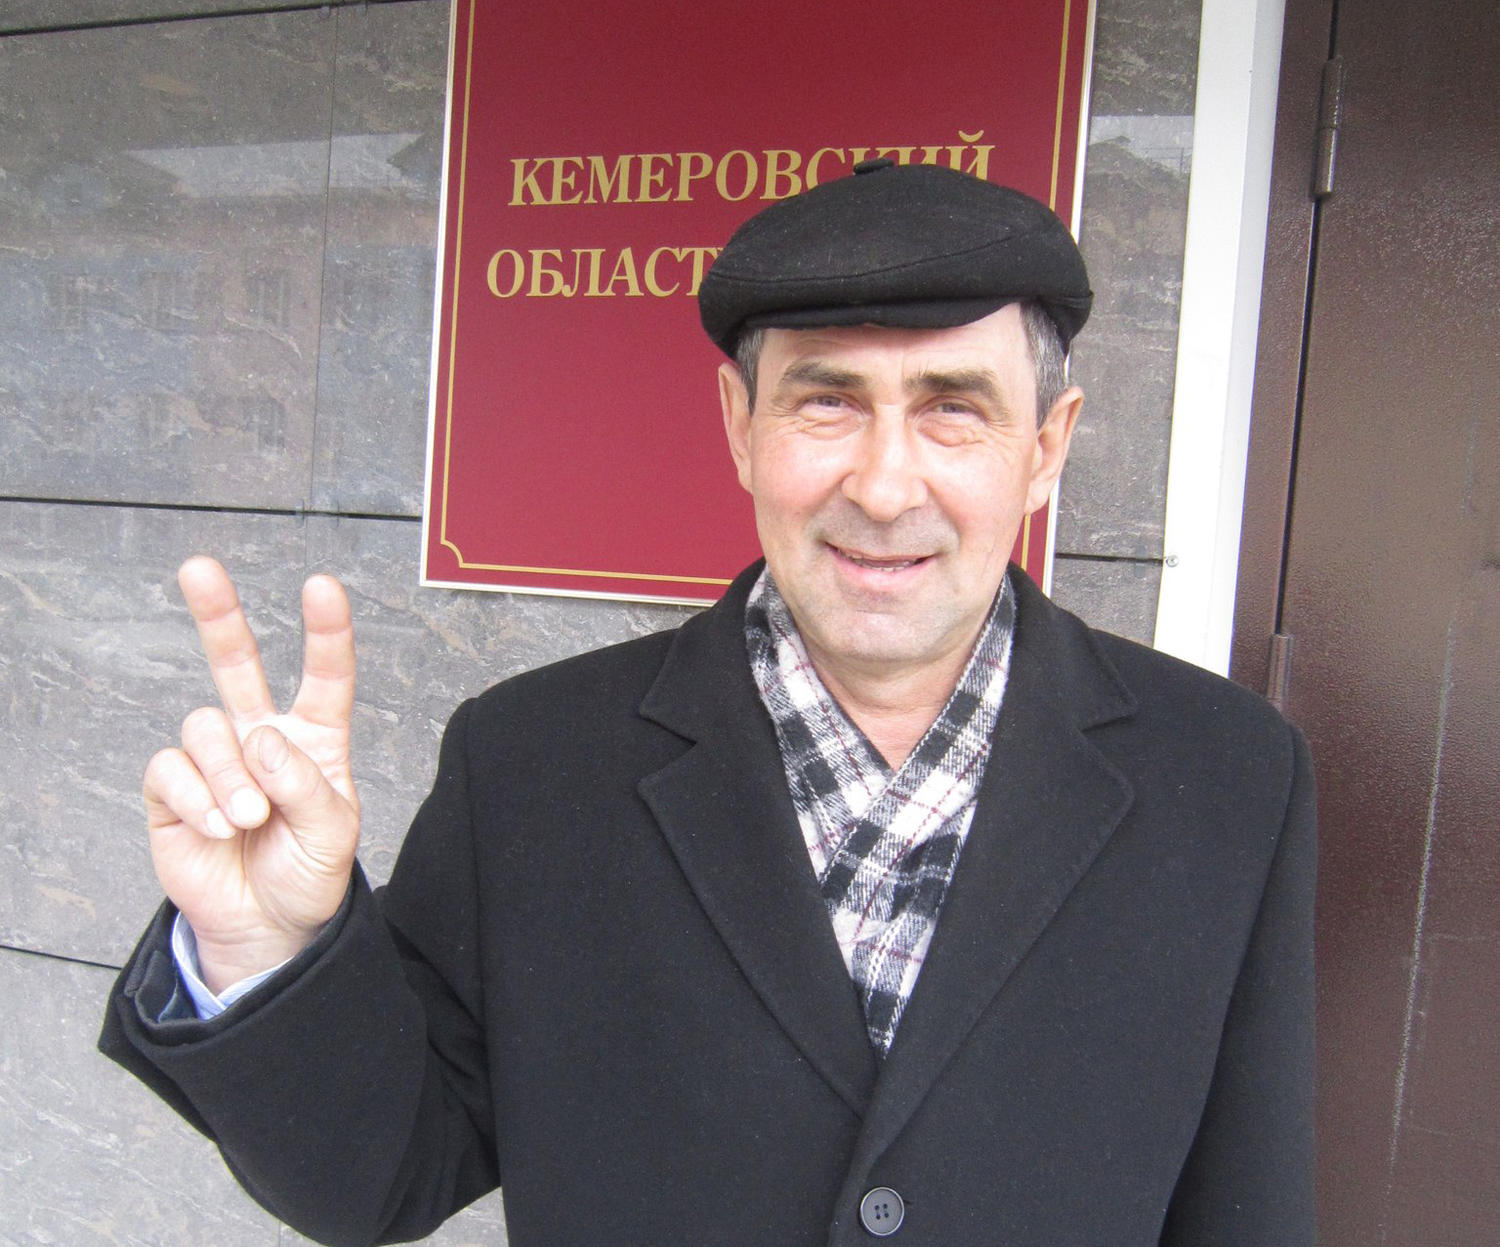 Партия «Яблоко» выдвинула на выборы губернатора Кузбасса Евгения Артемьева